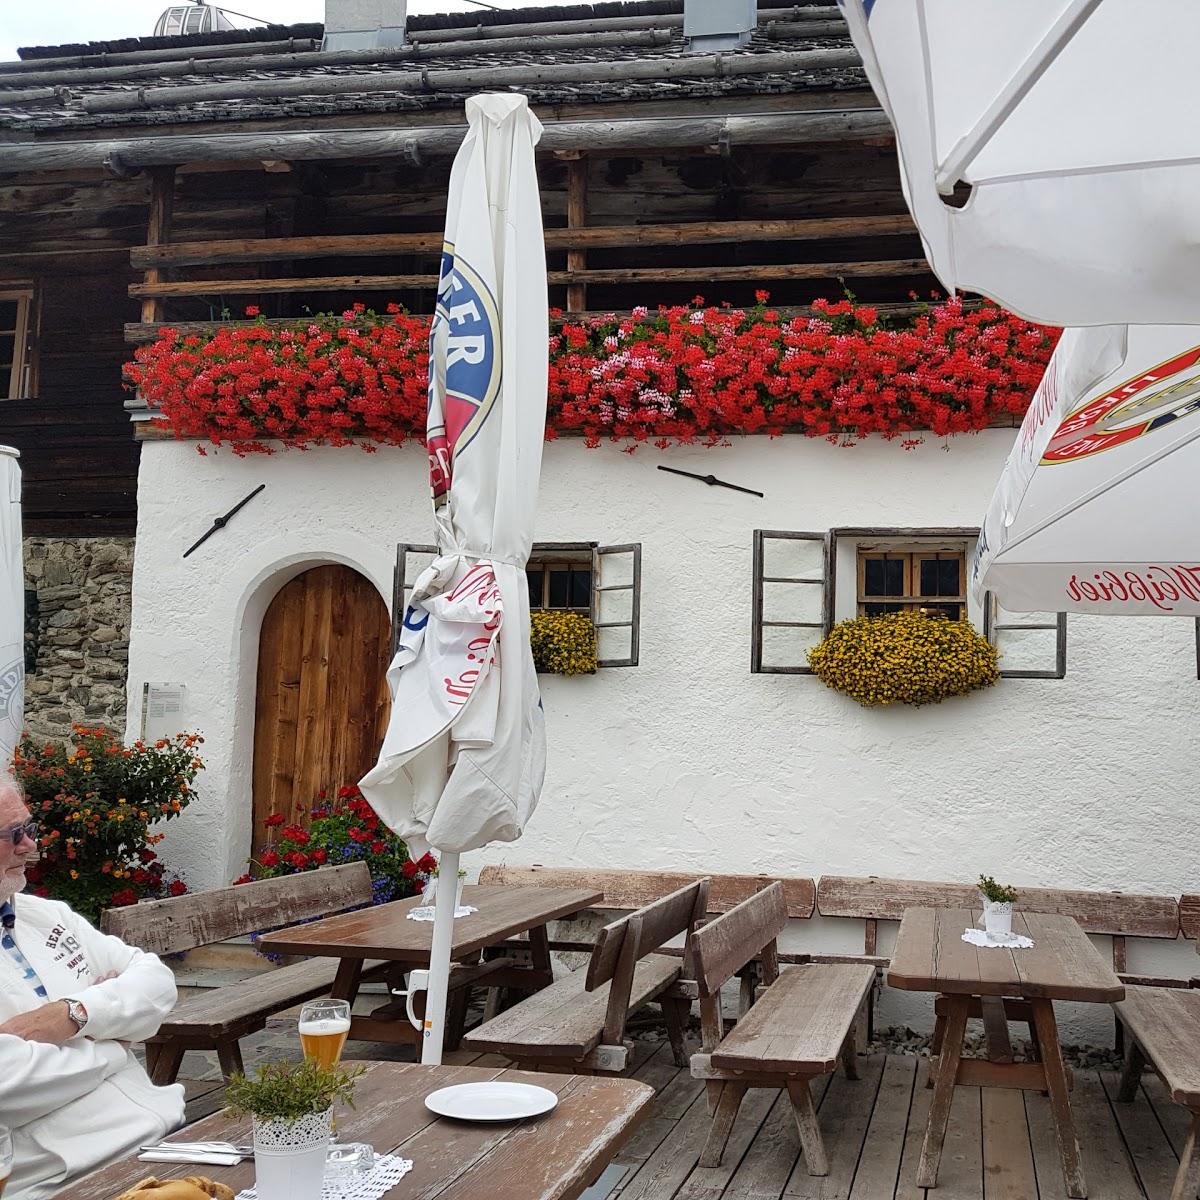 Restaurant "Oberegger Alm" in Sorafurcia